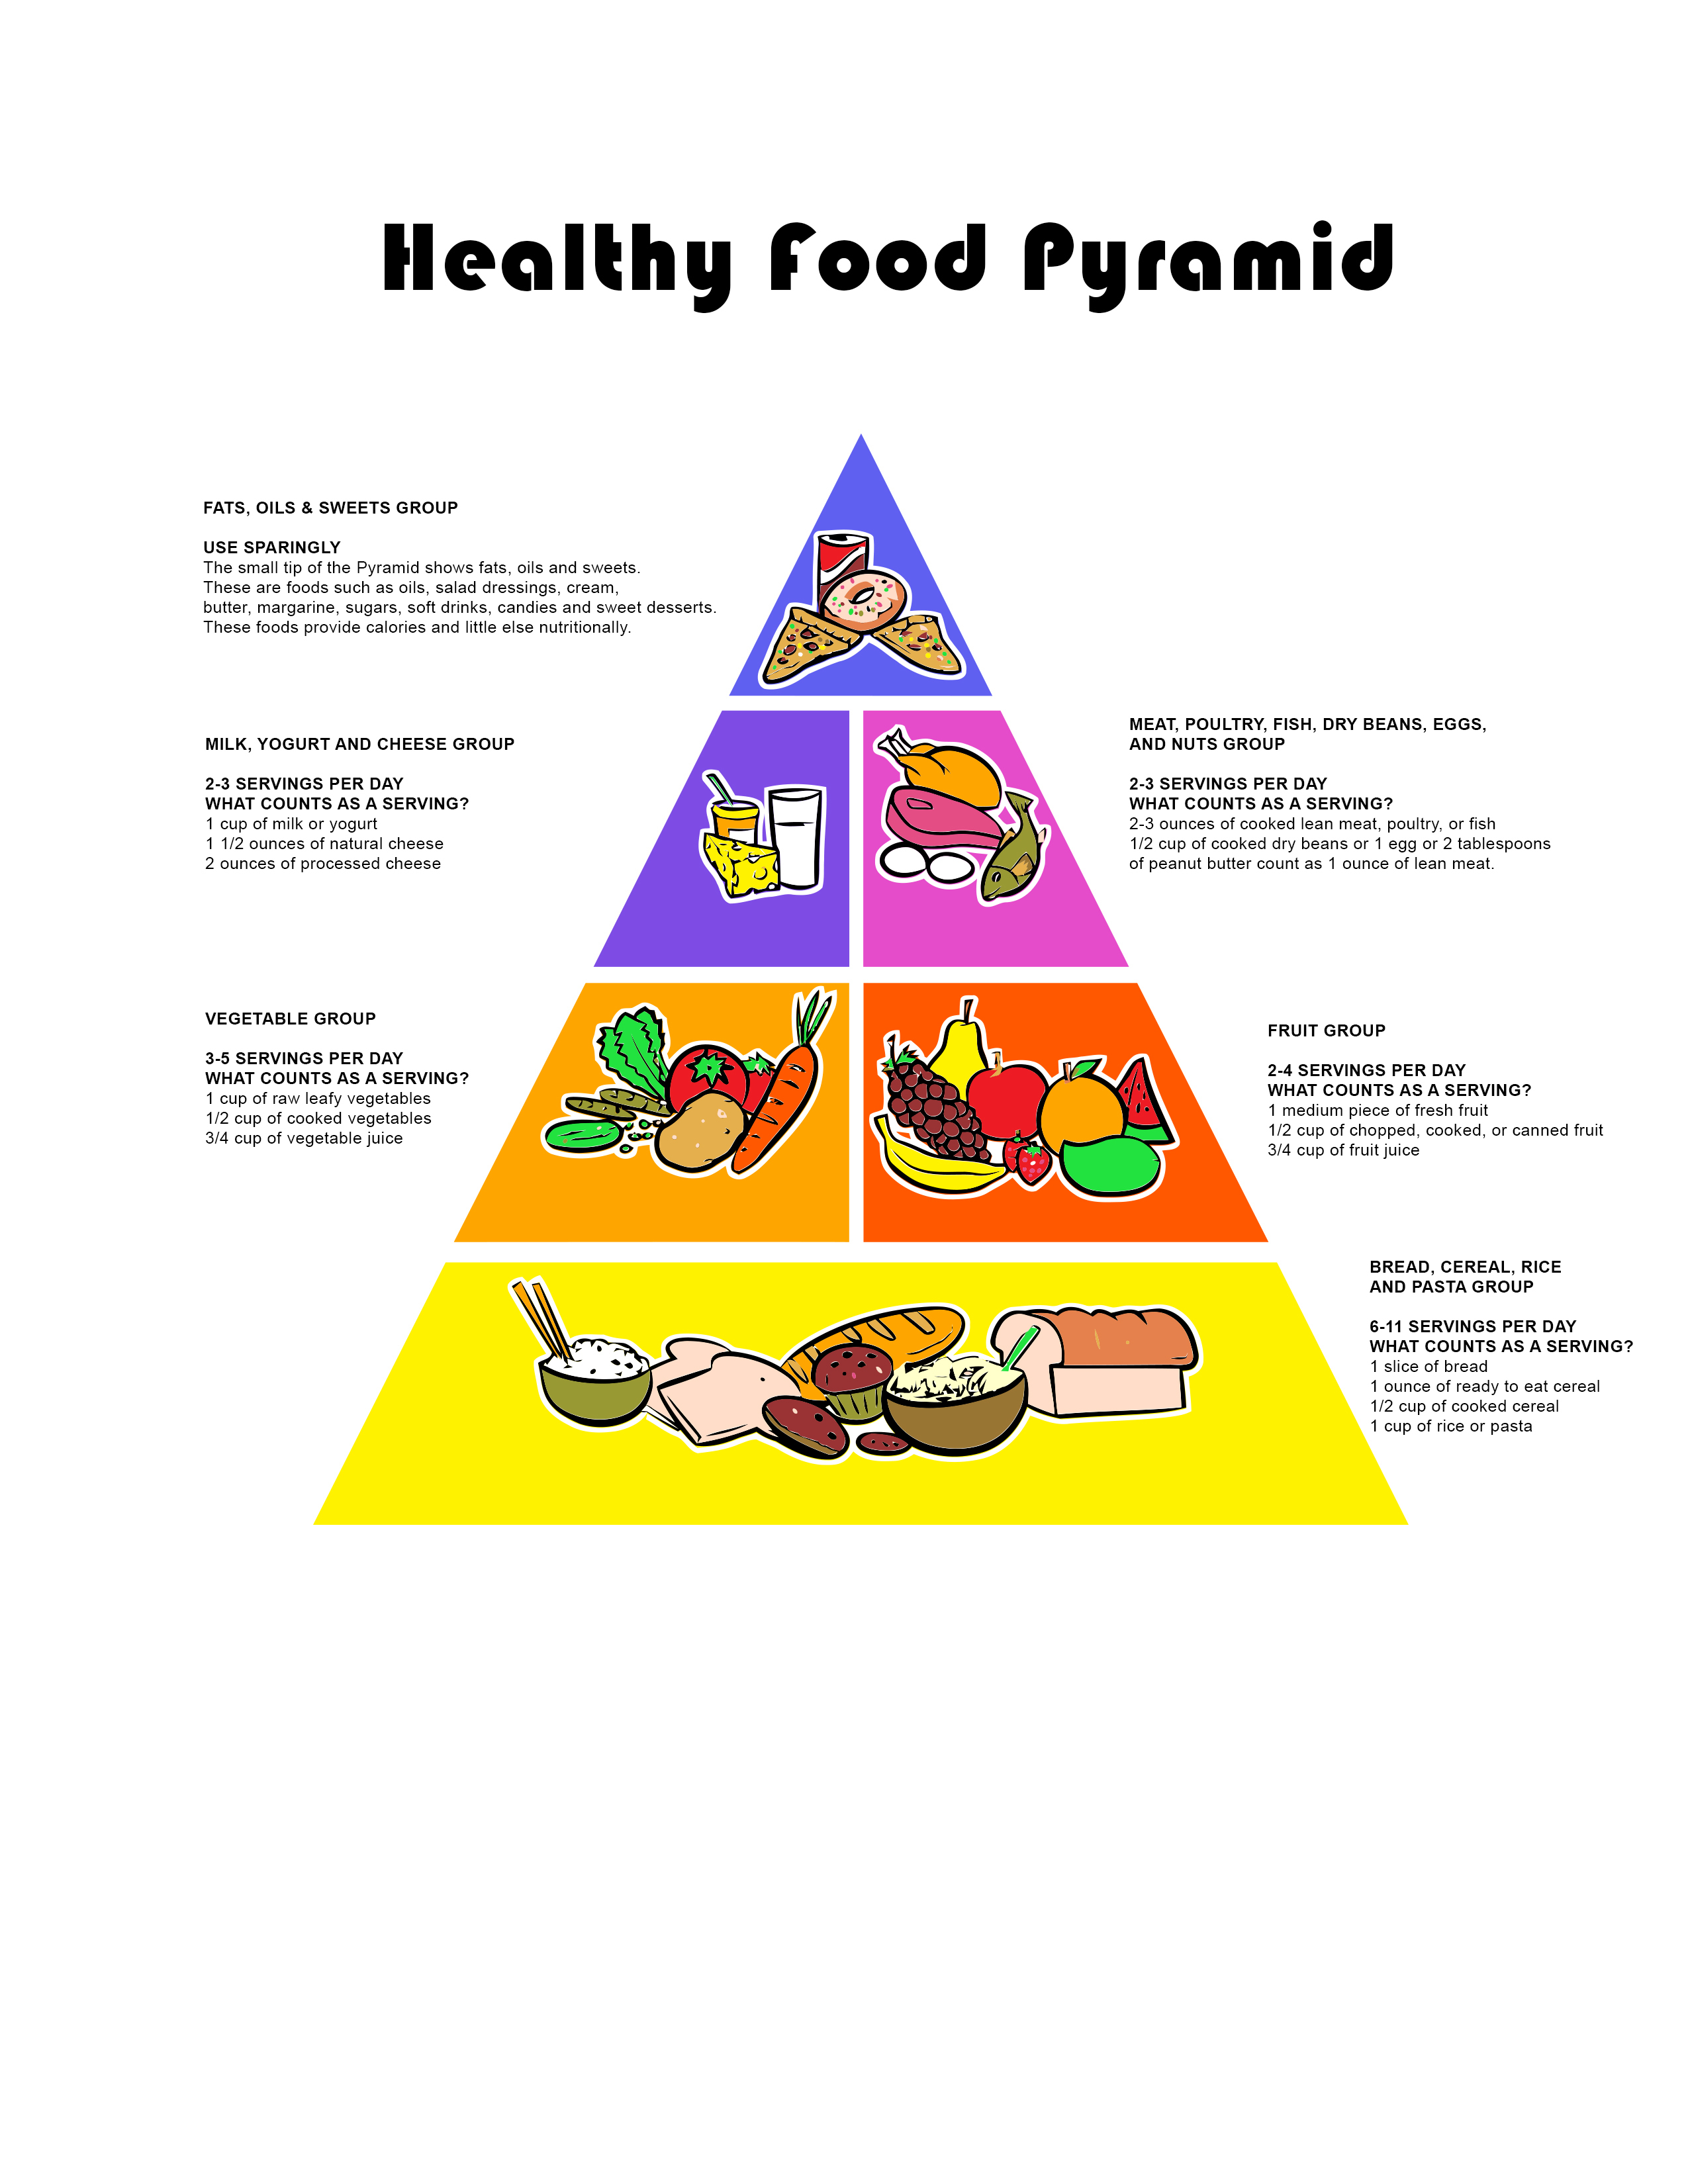 Printable Food Pyramid